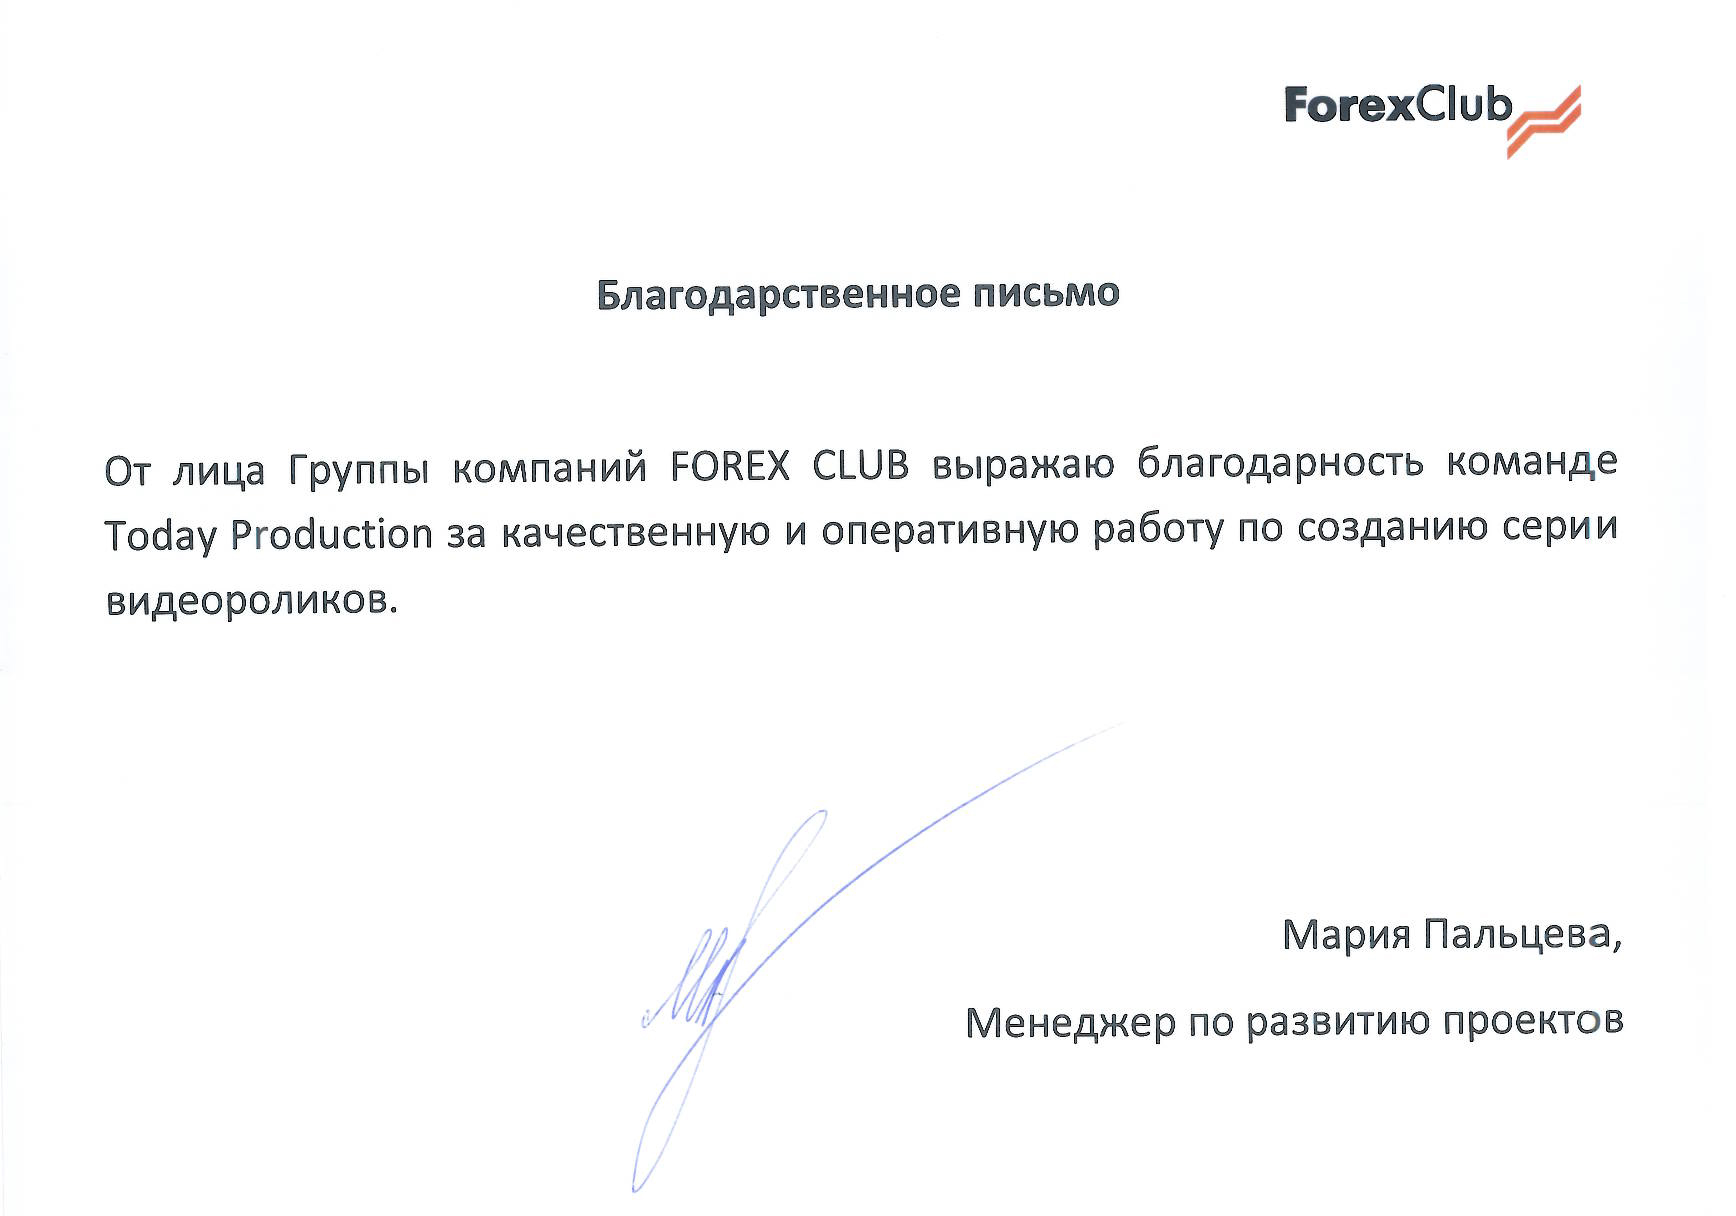 Forex-Club - благодарственное письмо